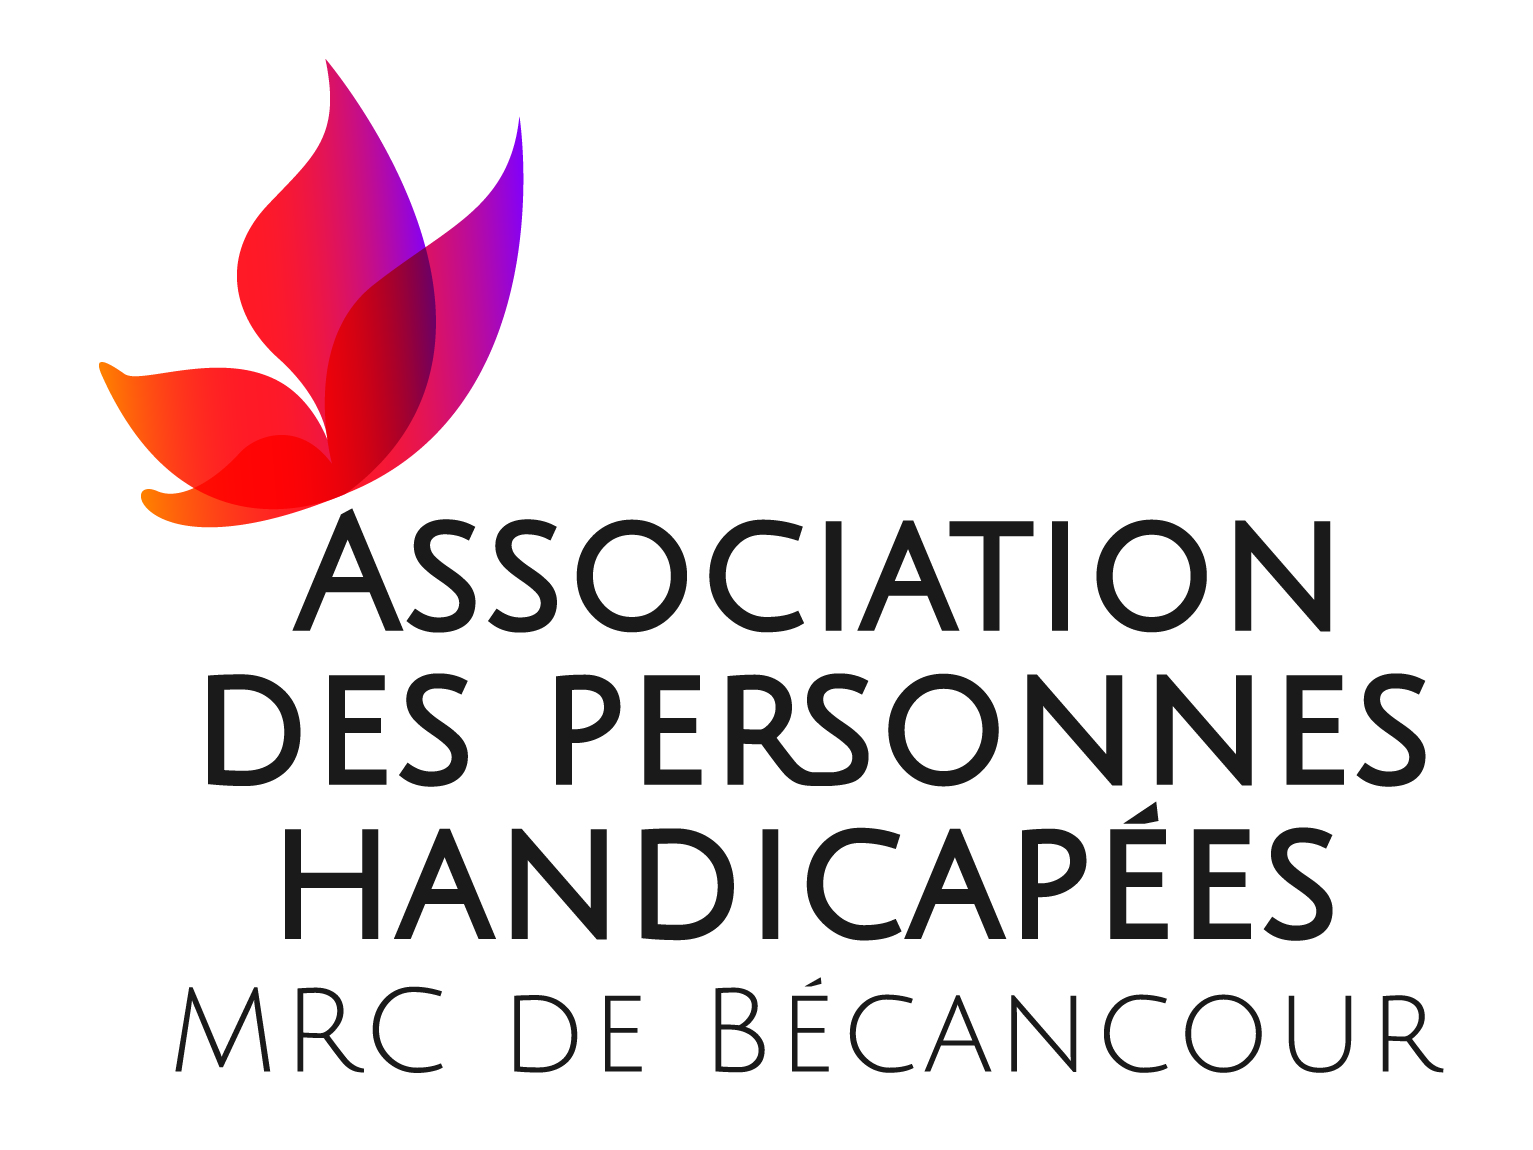 Association des personnes handicapées de la MRC de Bécancour (APHMRCB)